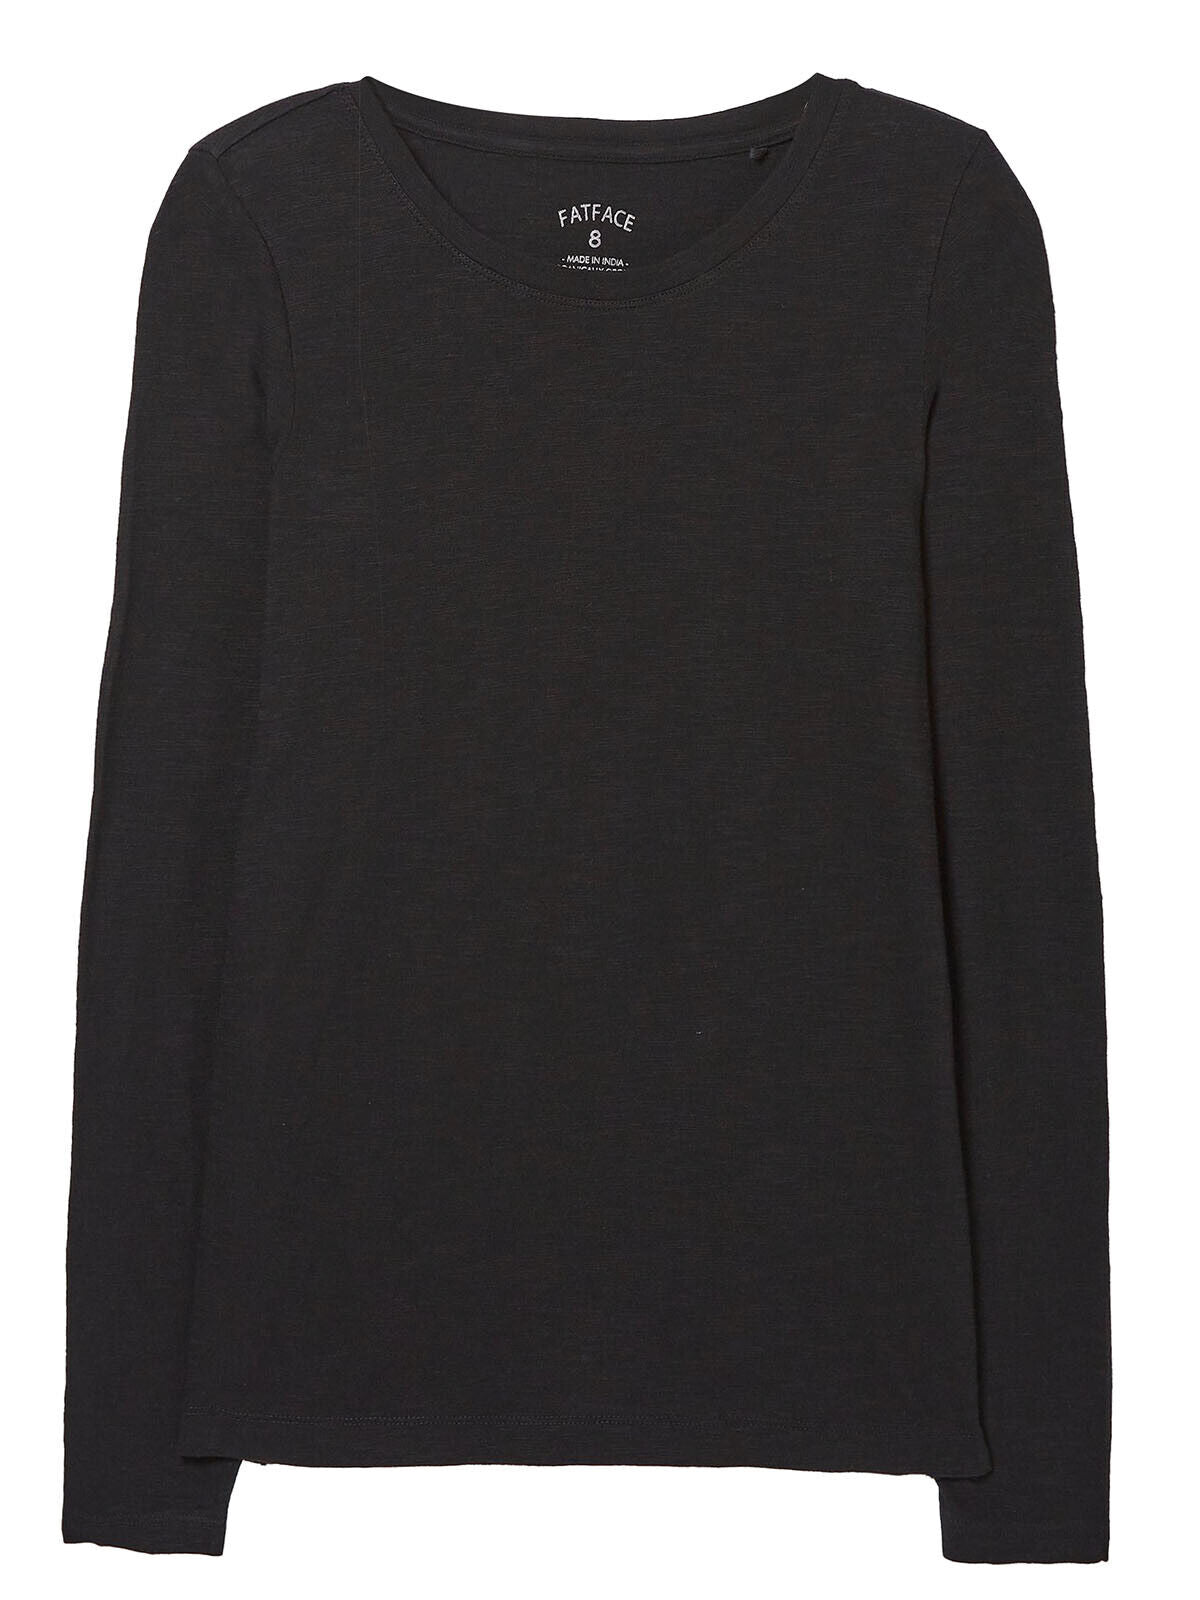 EX Fat Face Black Katie Organic Cotton T-Shirt Sizes 10 12 14 18 20 24 RRP £25